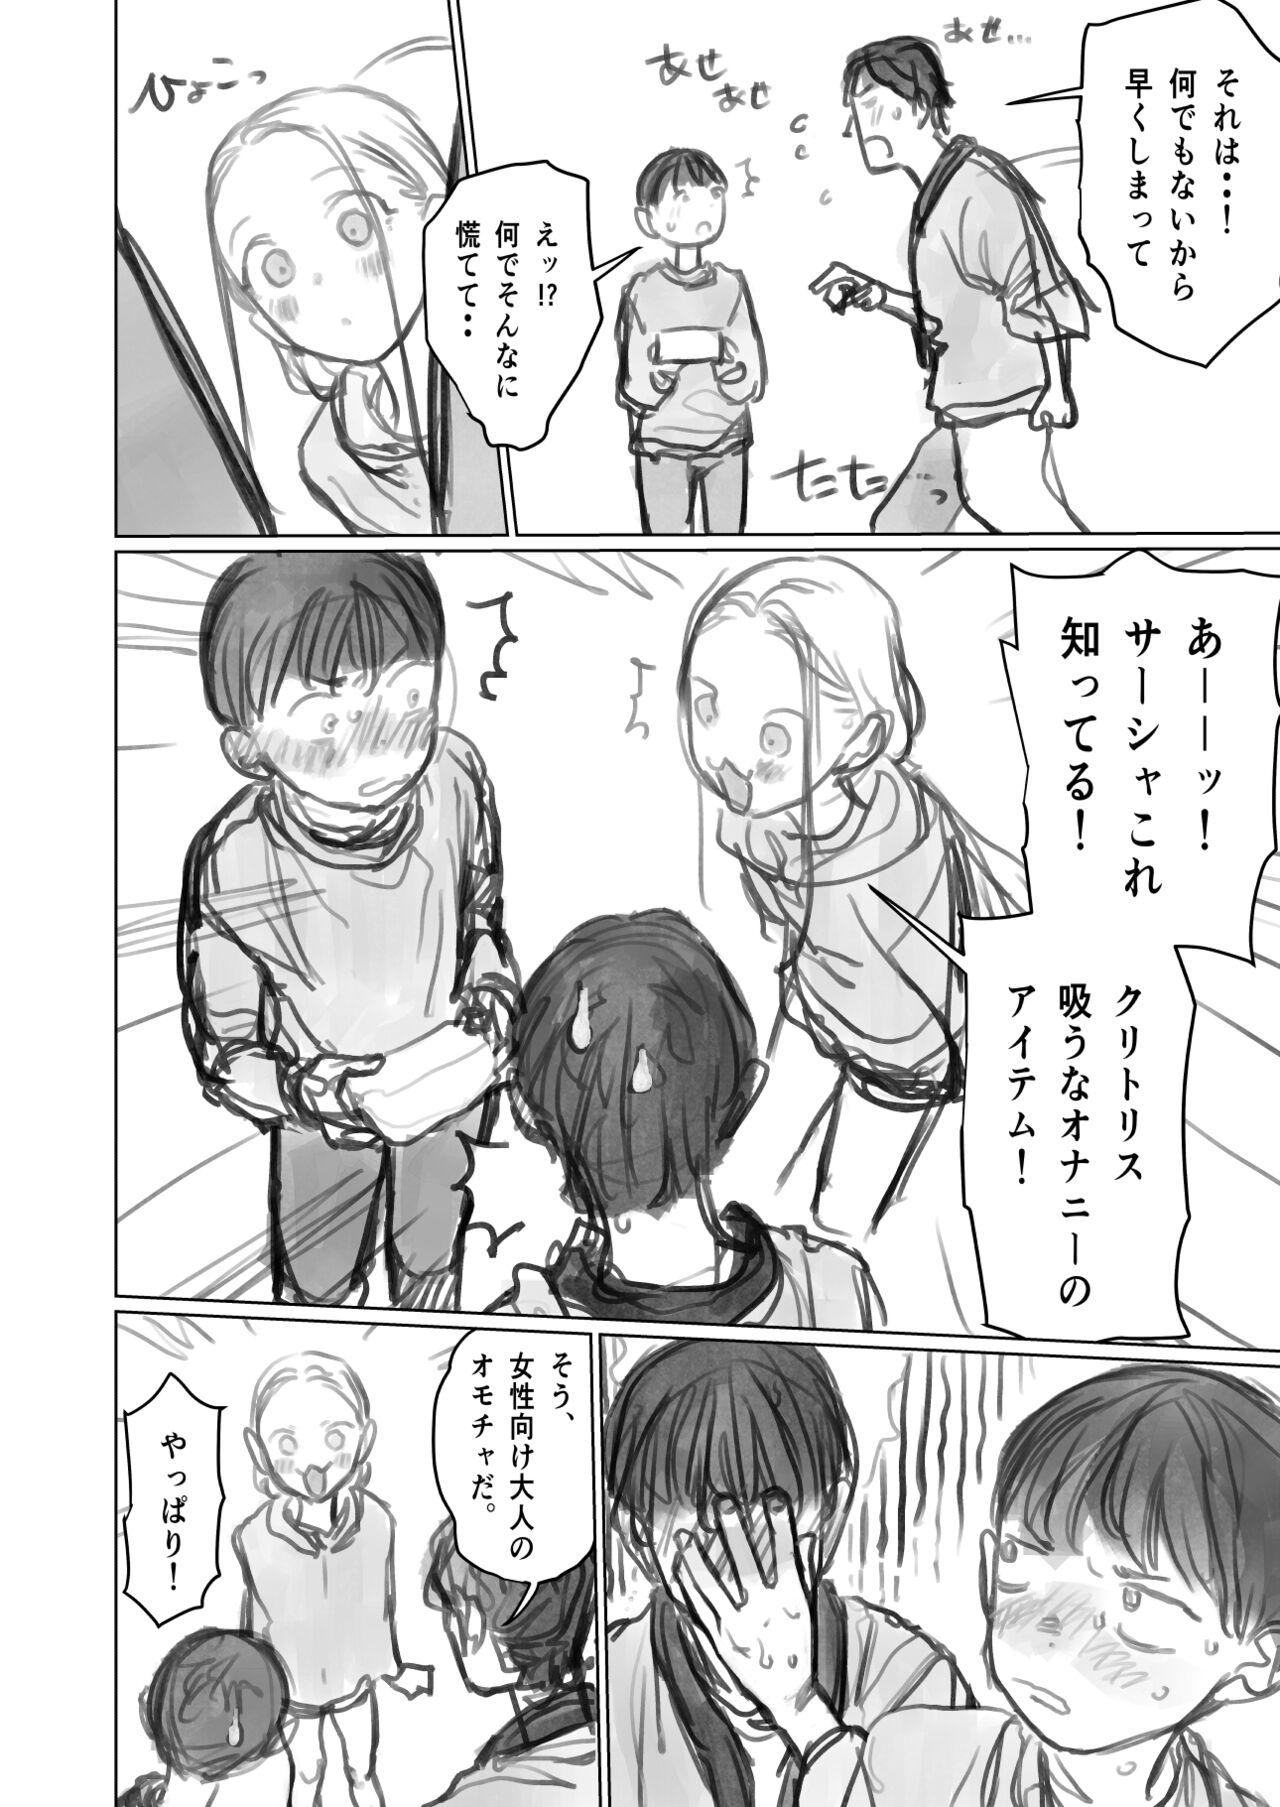 Porra Cli Kyuuin Omocha to Sasha-chan. - Original Nuru - Page 2